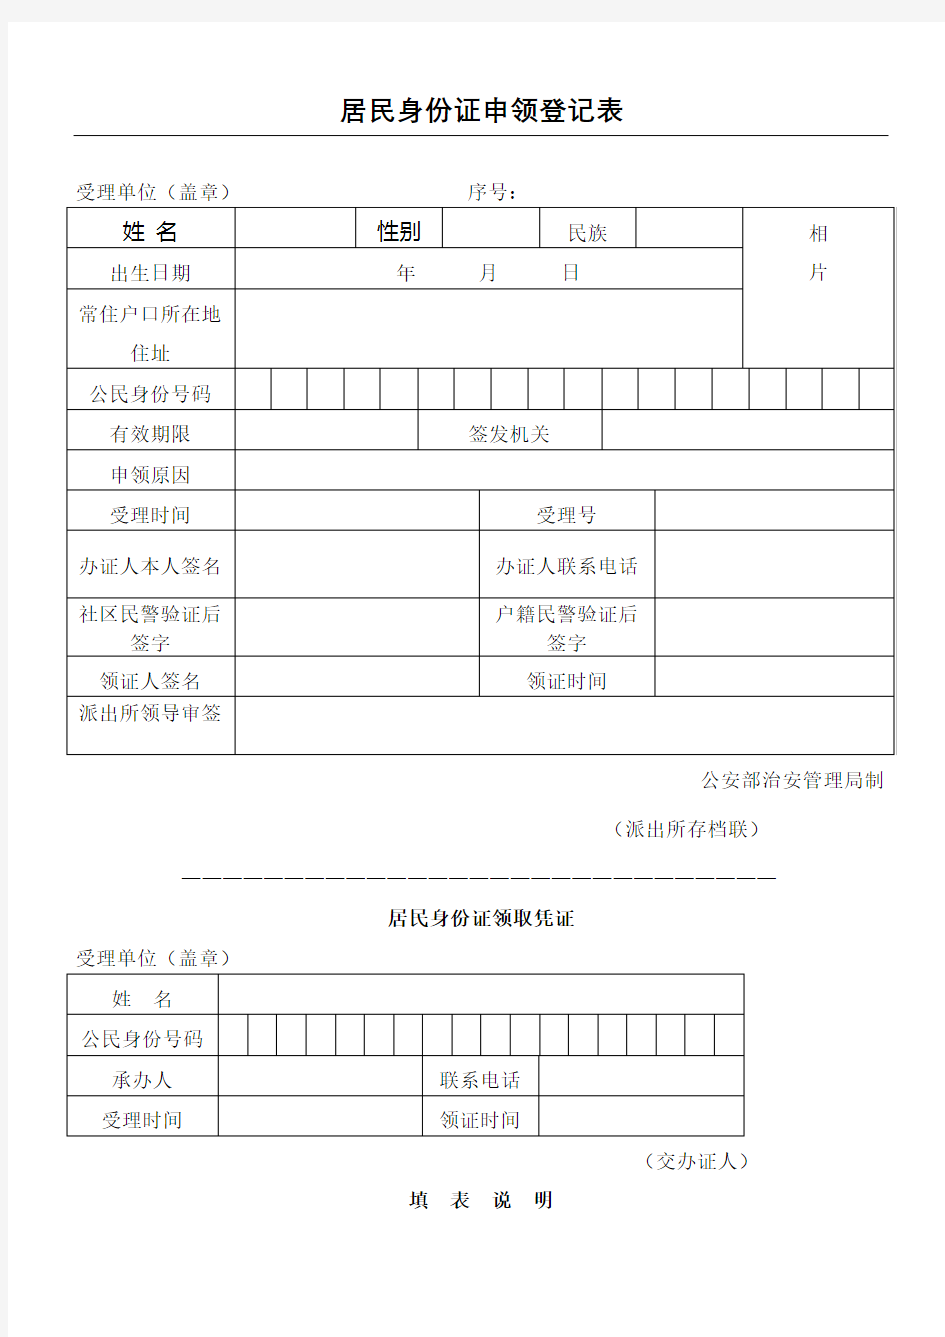 居民身份证申领登记表